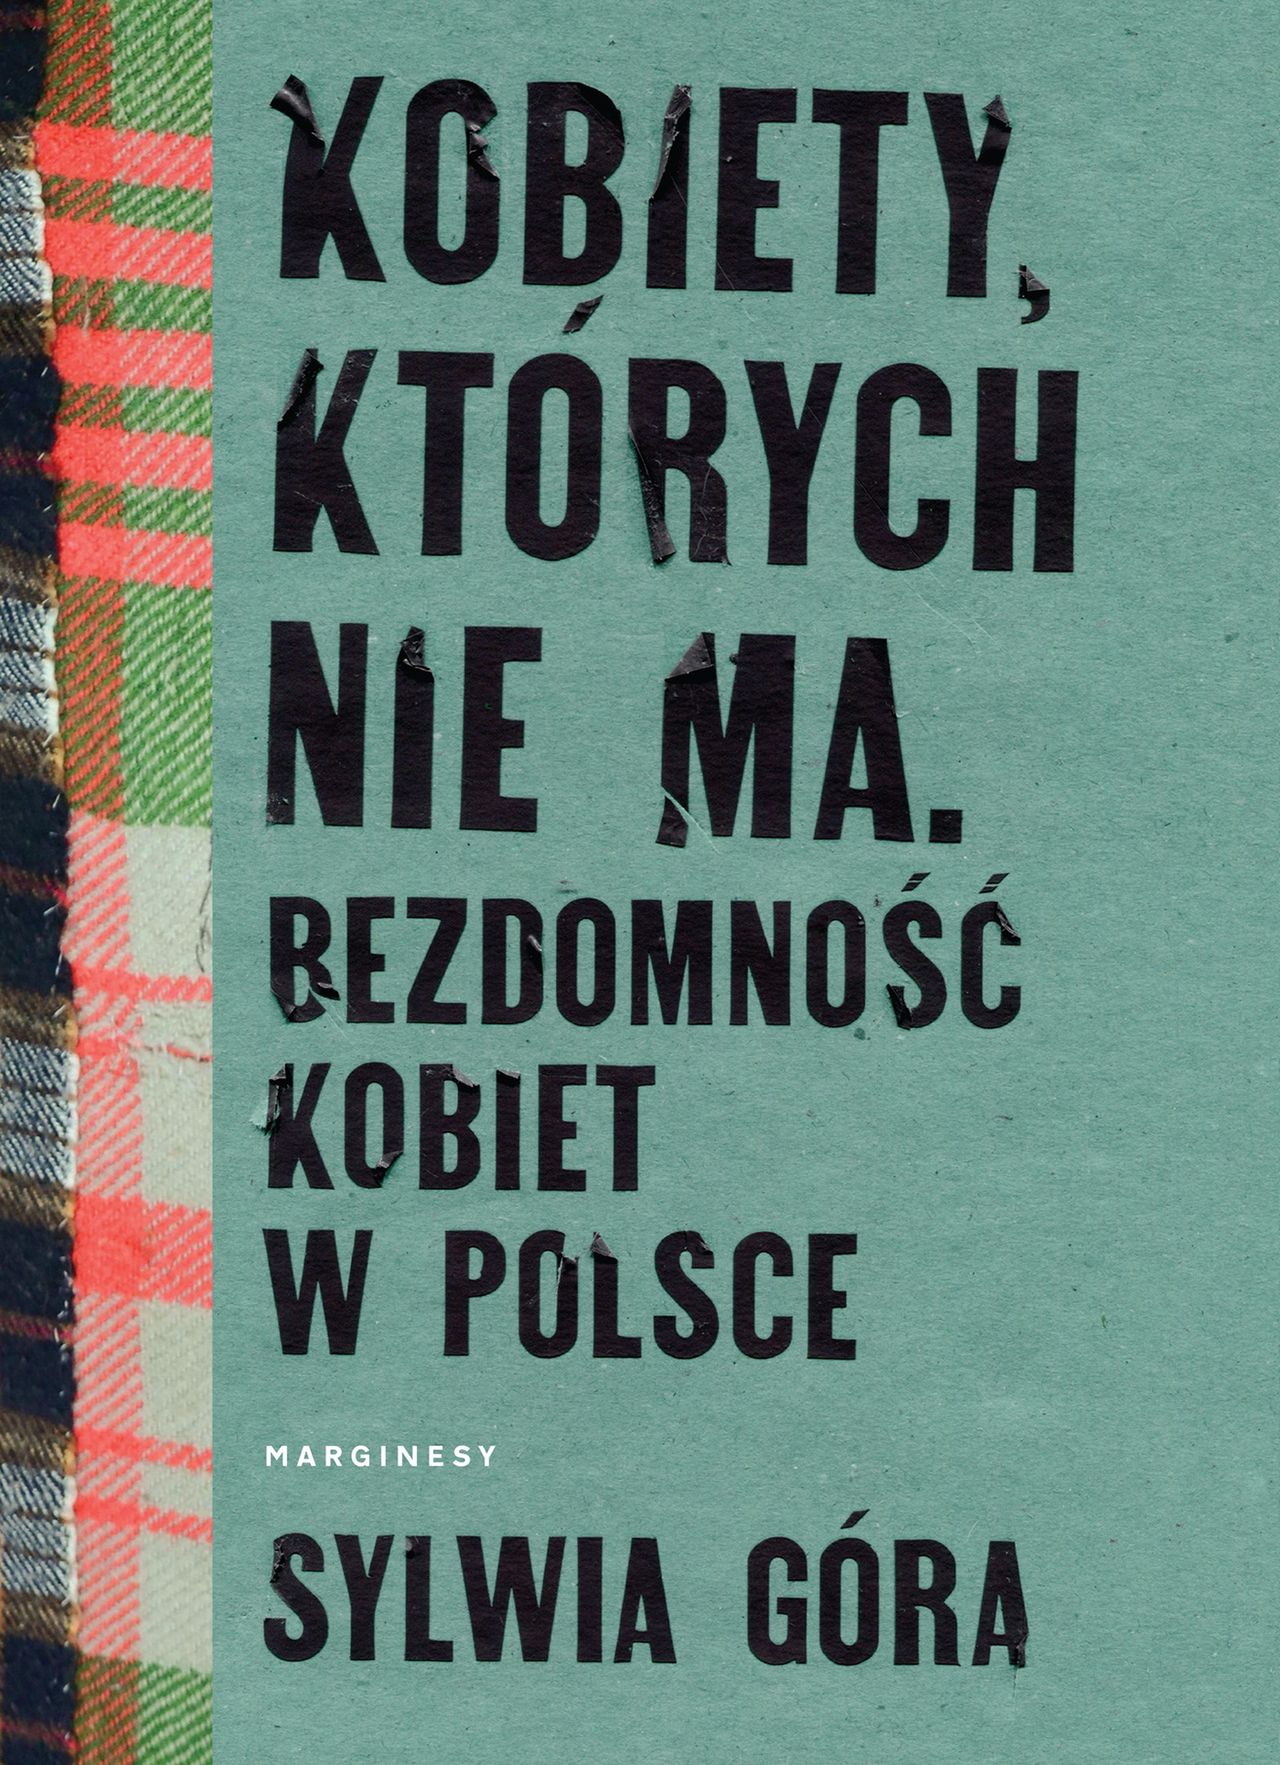 Okładka książki Sylwii Góry "Kobiety, których nie ma. Bezdomność kobiet w Polsce" 